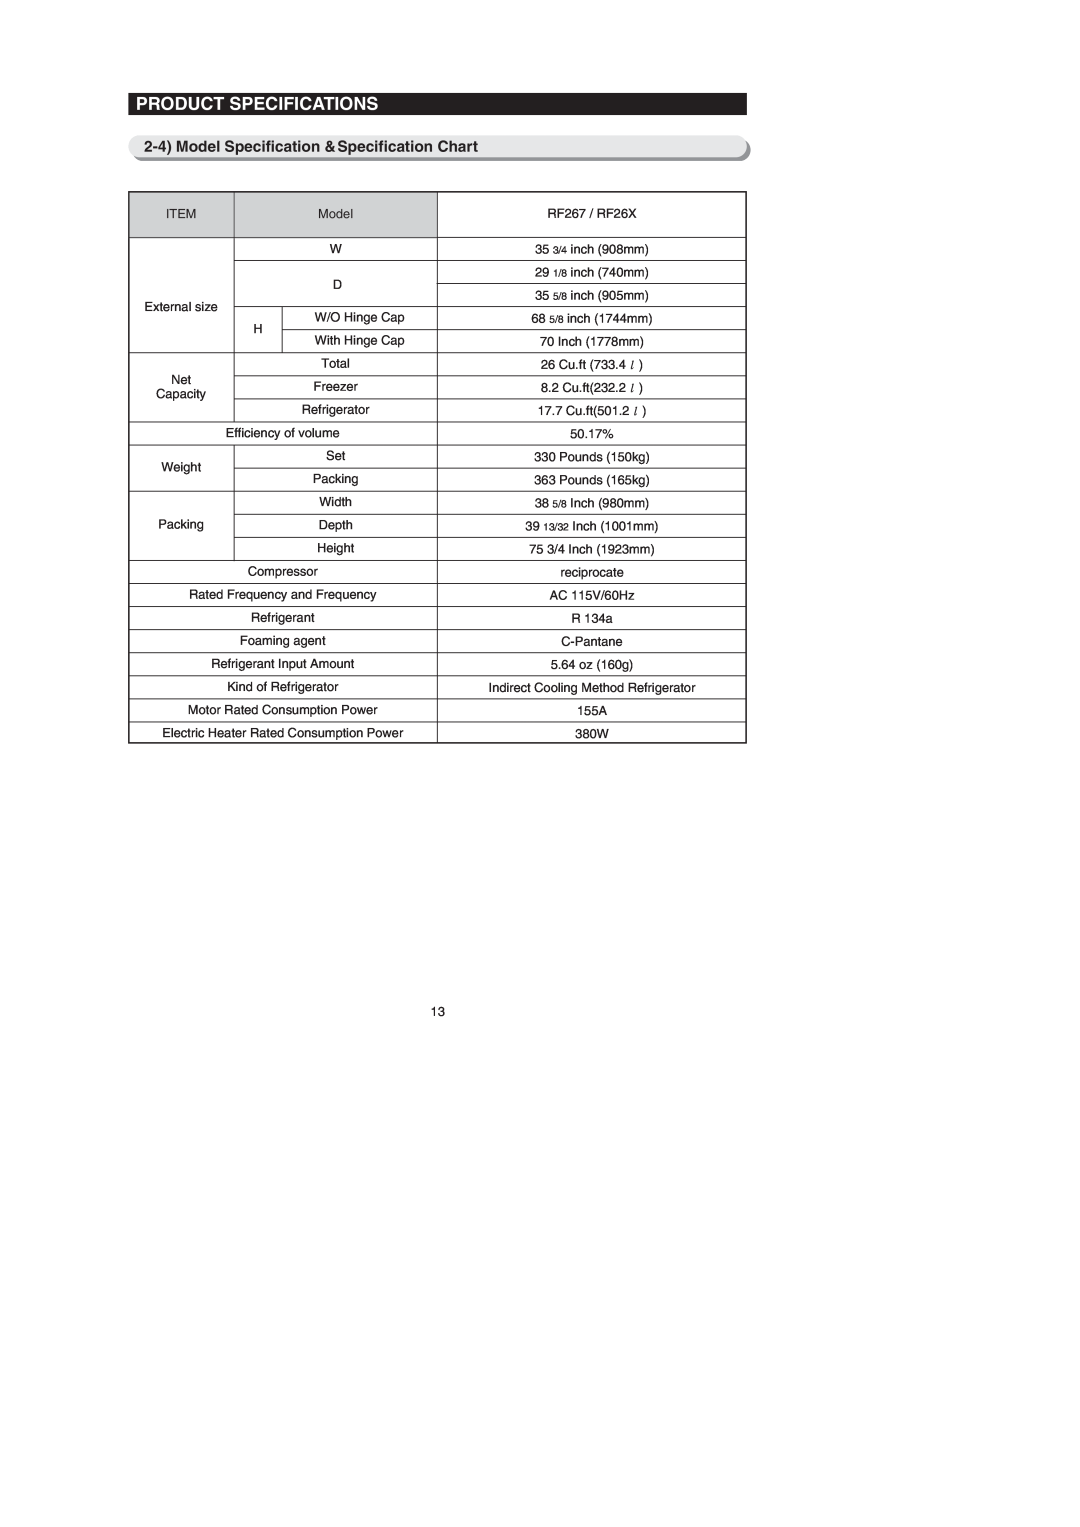 Samsung RF26XAE**, RF267AEBP, RF267AE**, RF26XAERS Product Specifications, Model Specification &Specification Chart 